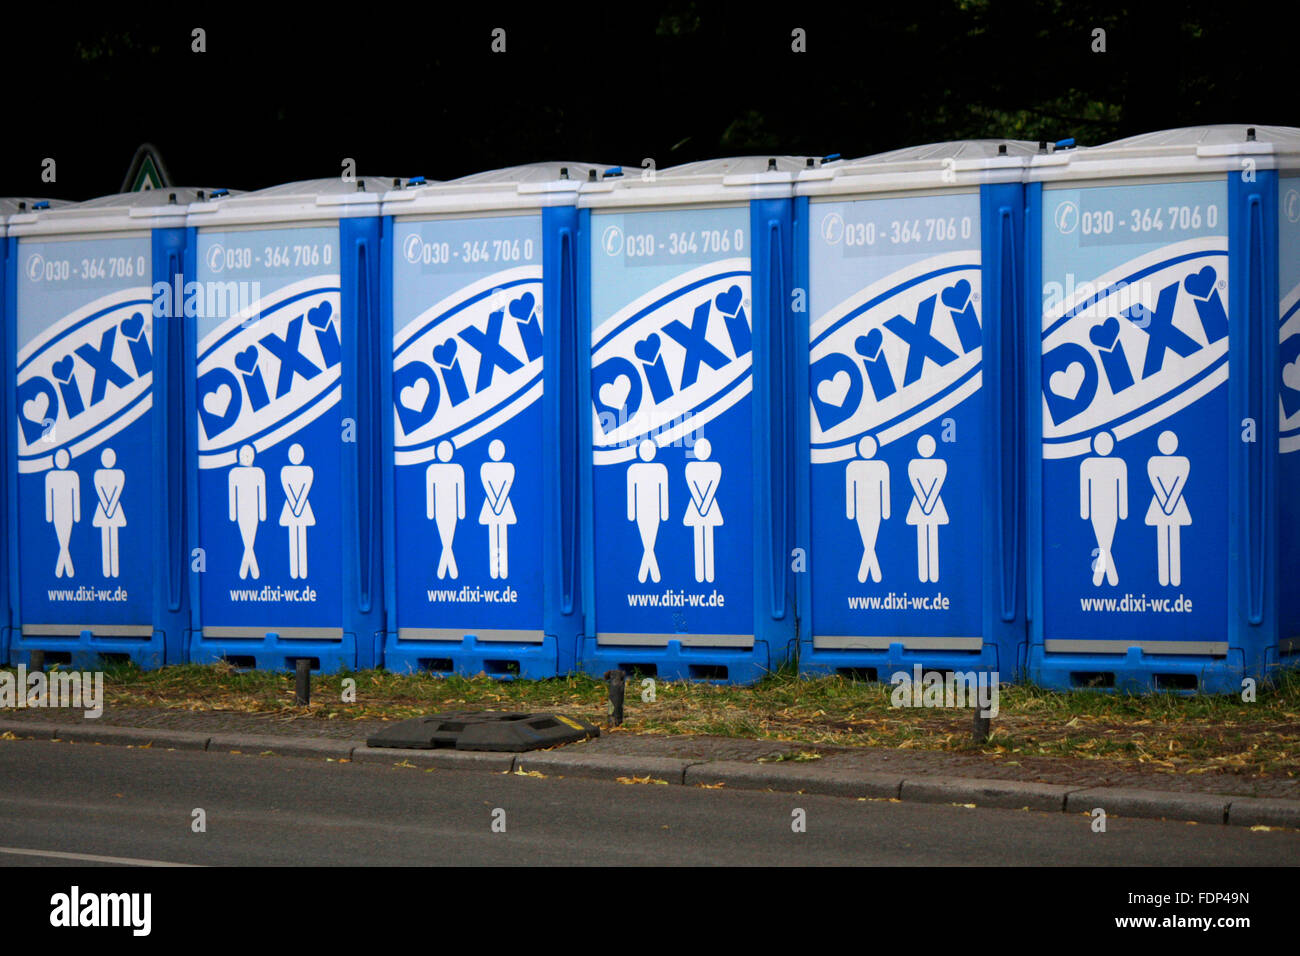 Markenname: 'Dixi', de Berlín. Foto de stock